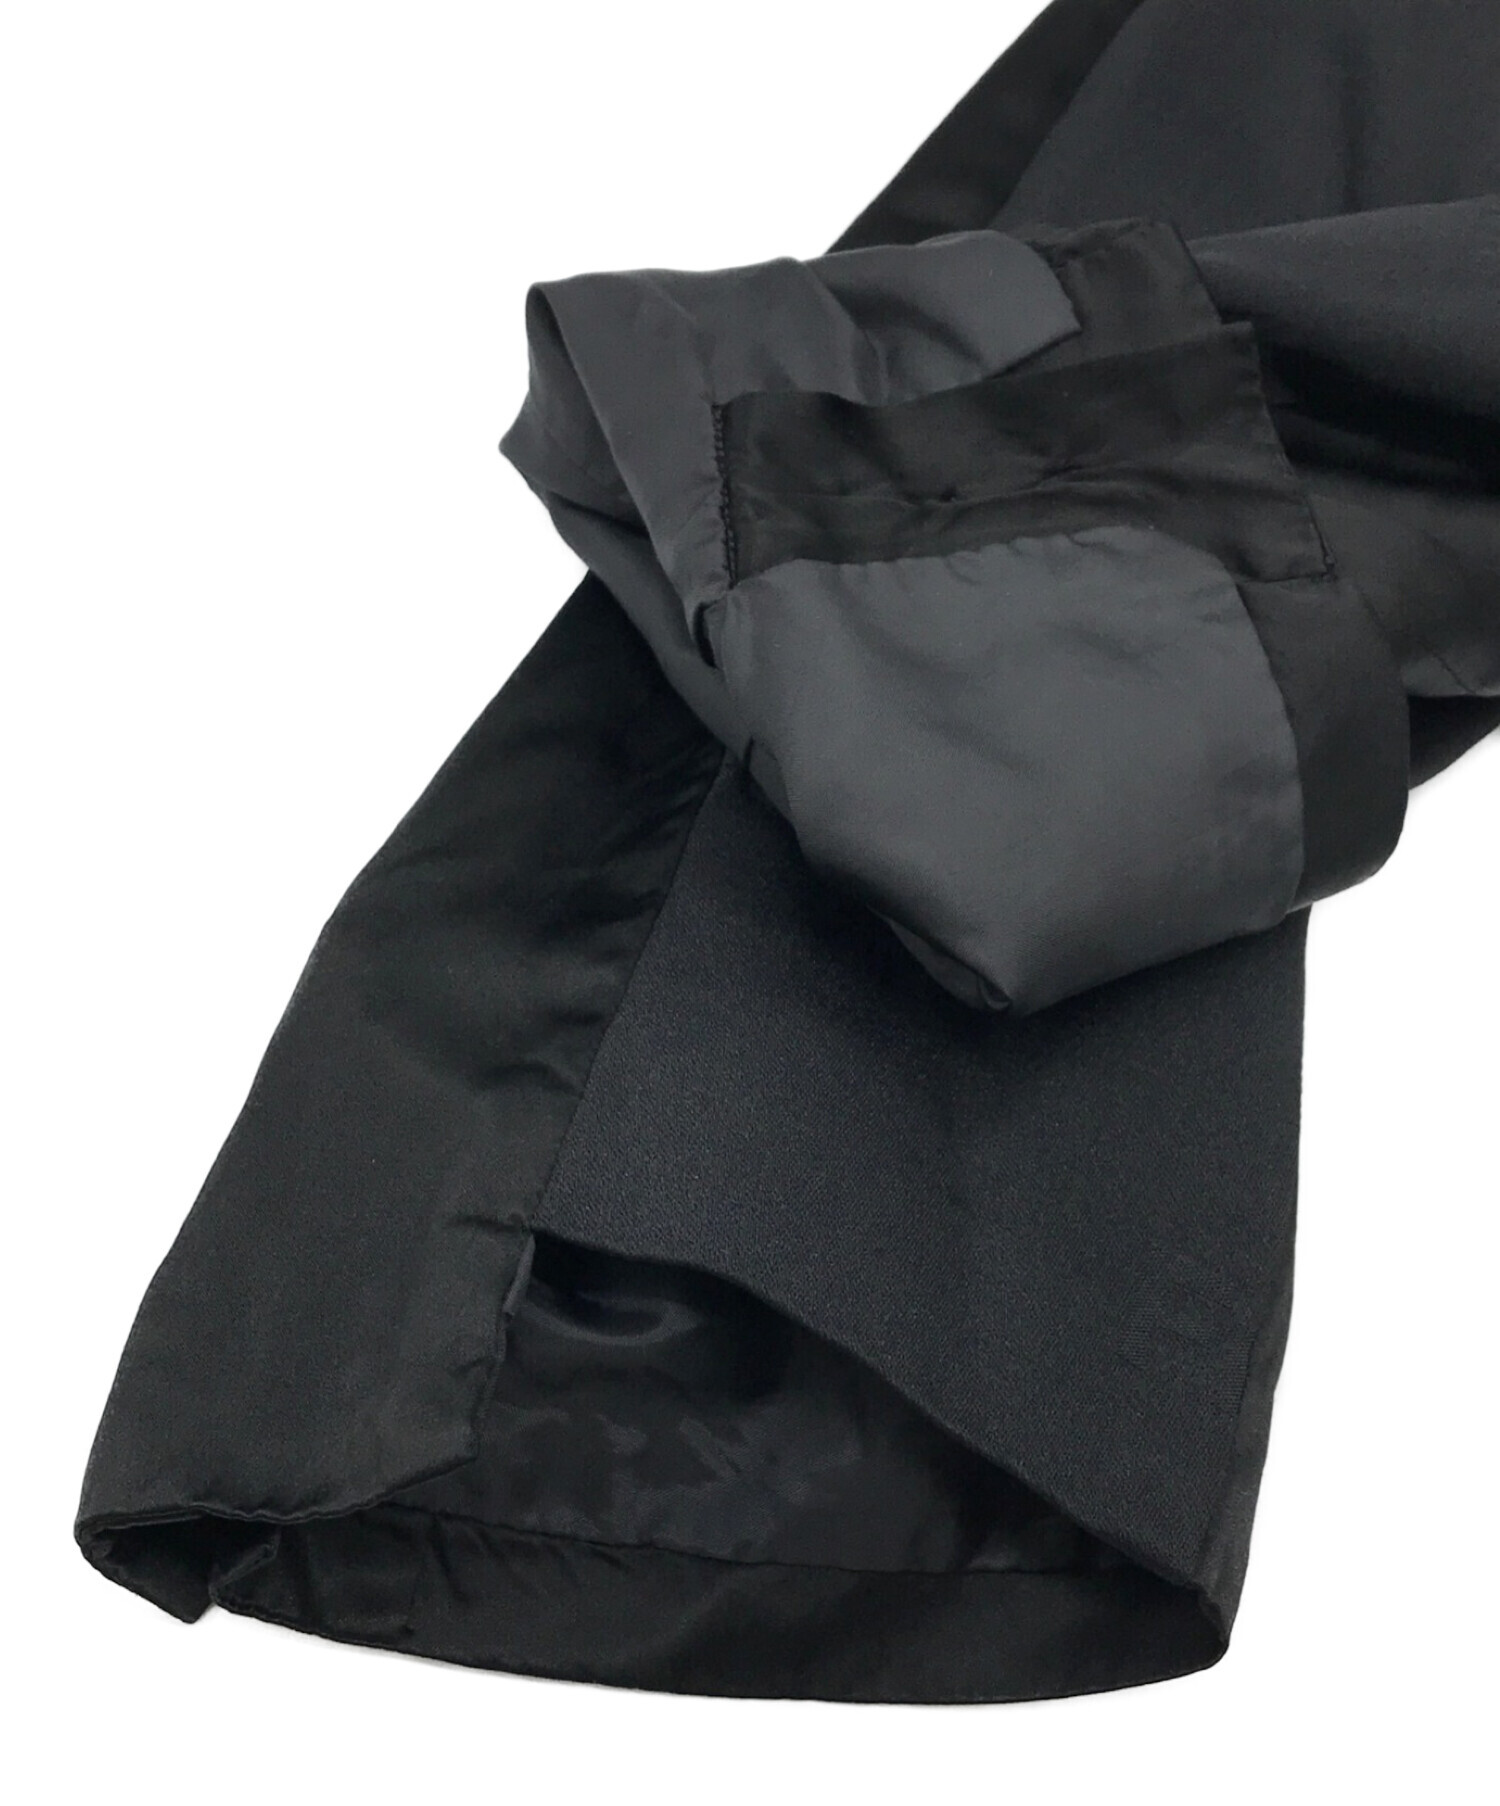 ブラックコムデギャルソン 2013年 日本製 テーラードジャケット L グレー系 BLACK COMME des GARCONS コーデュロイ ペイズリー メンズ   【220831】